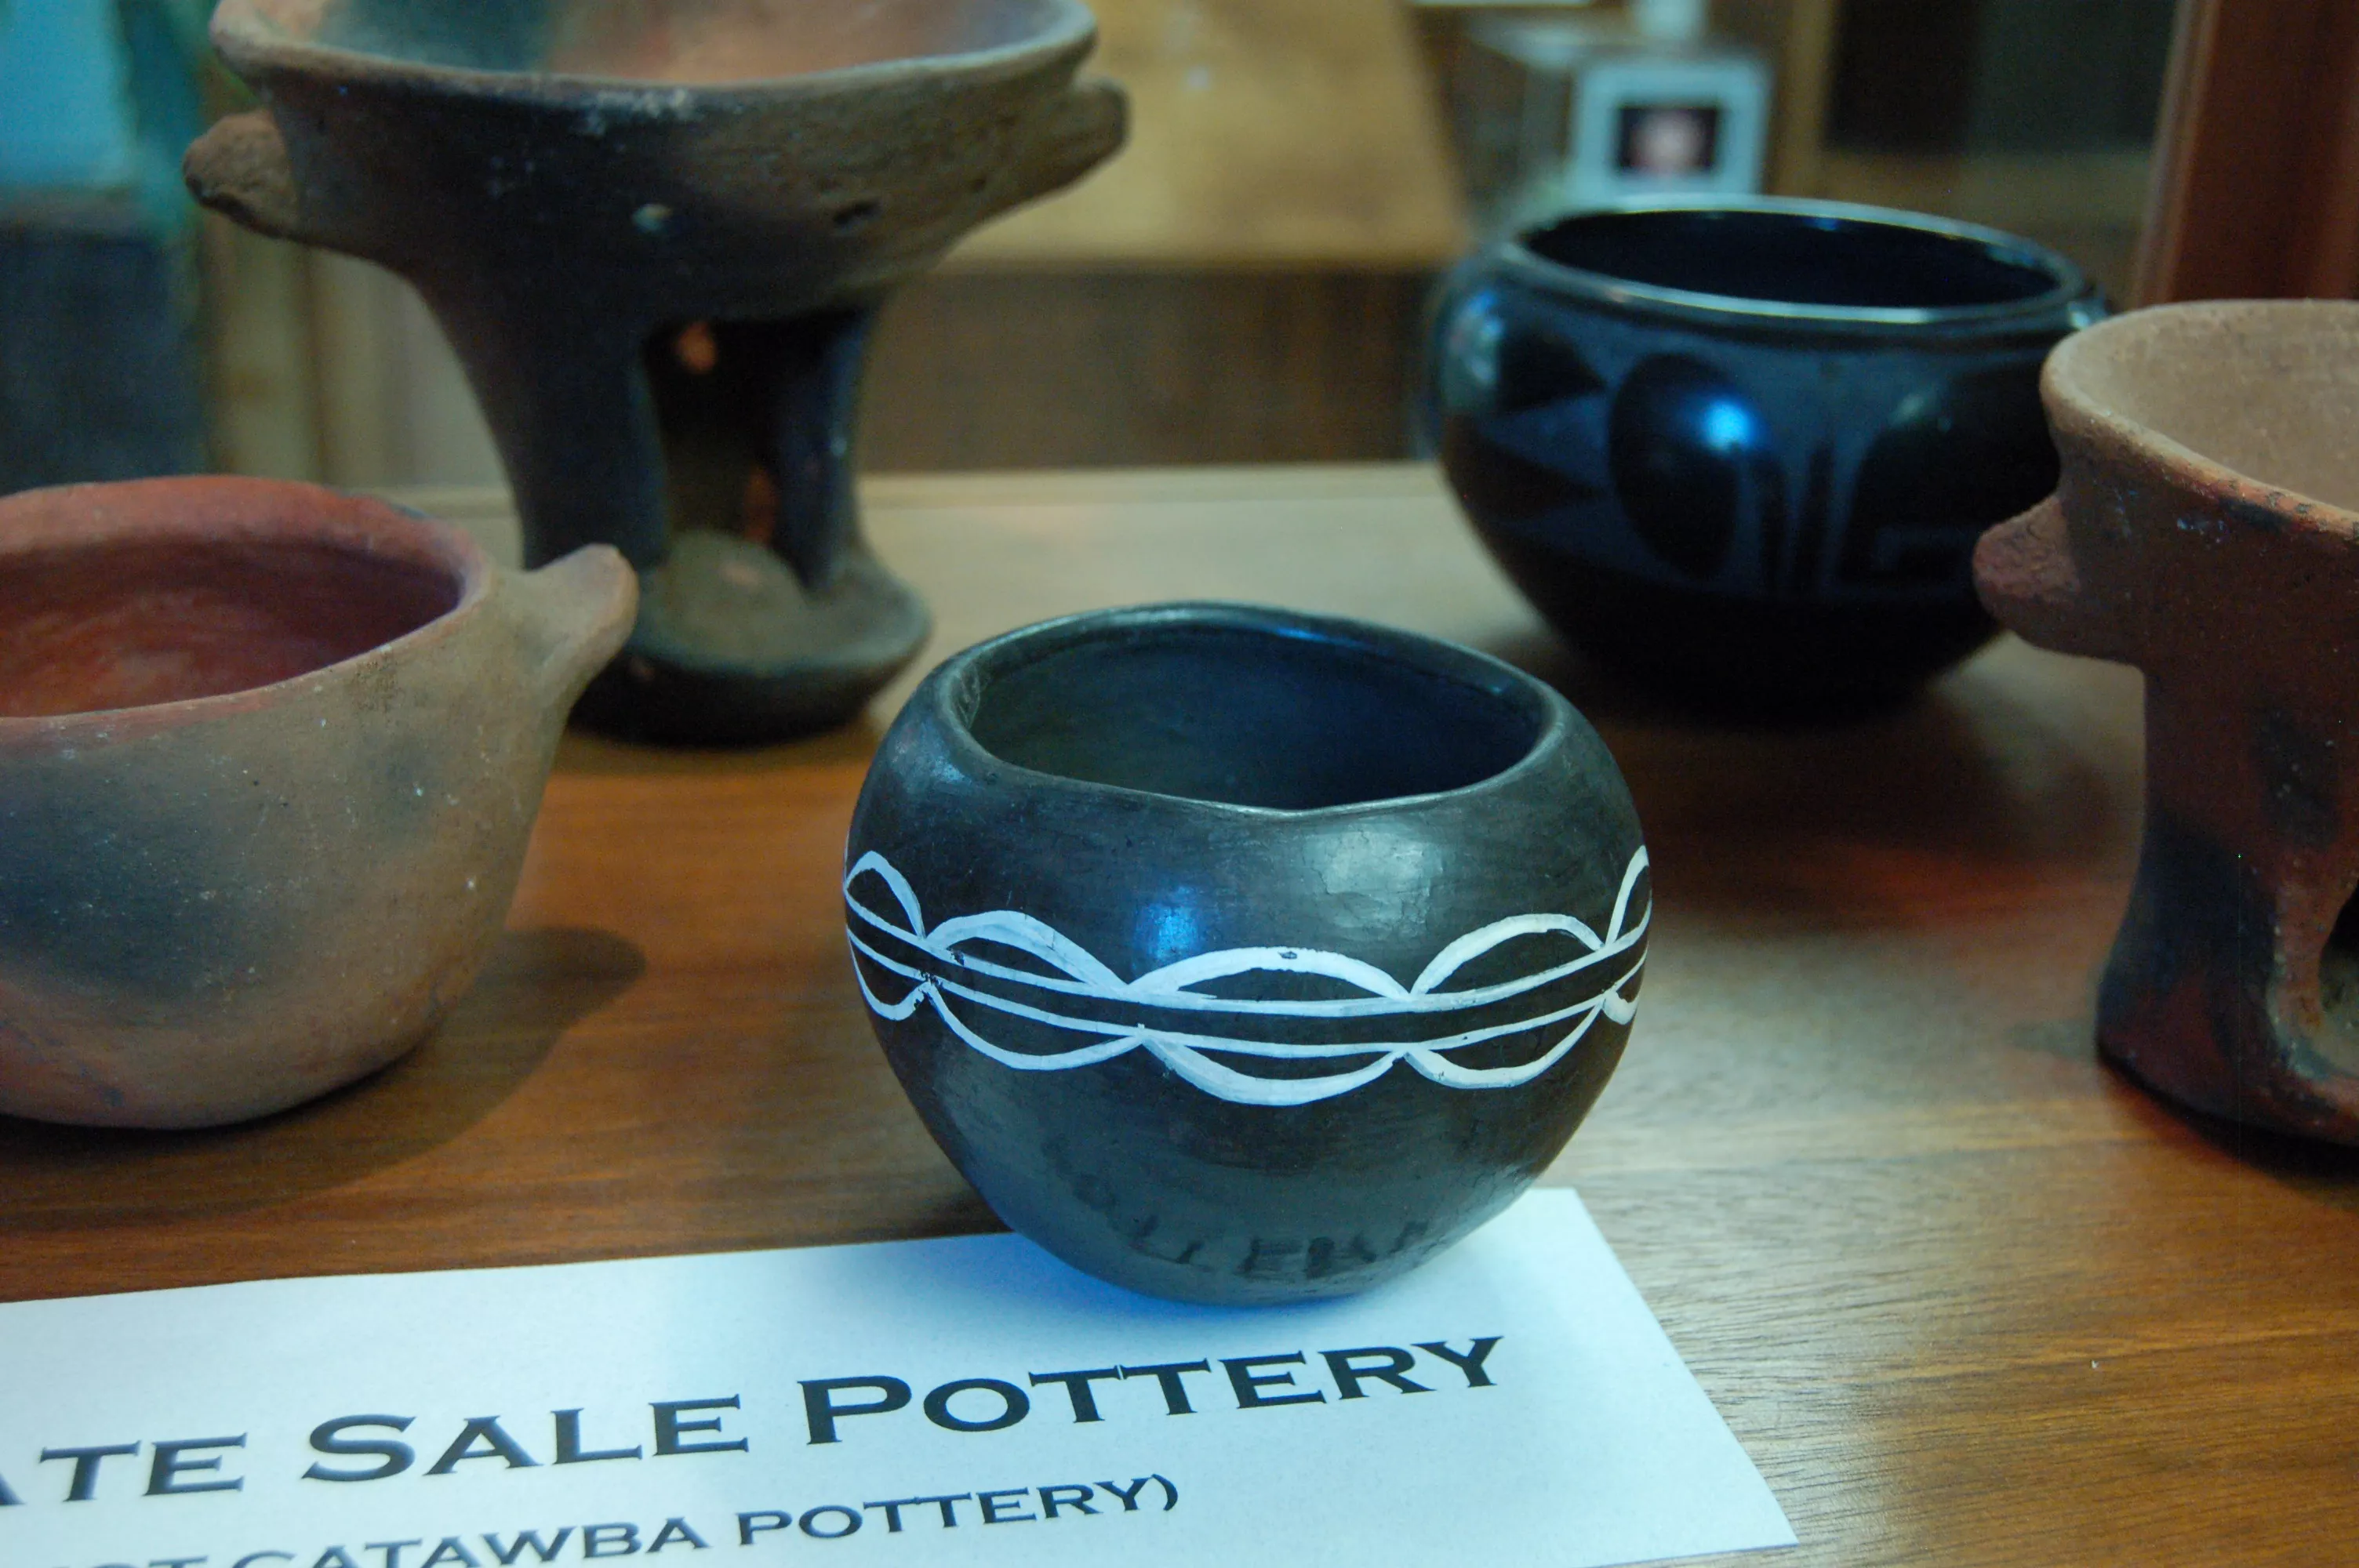 See South Carolina-made Catawba pottery - COLAtoday